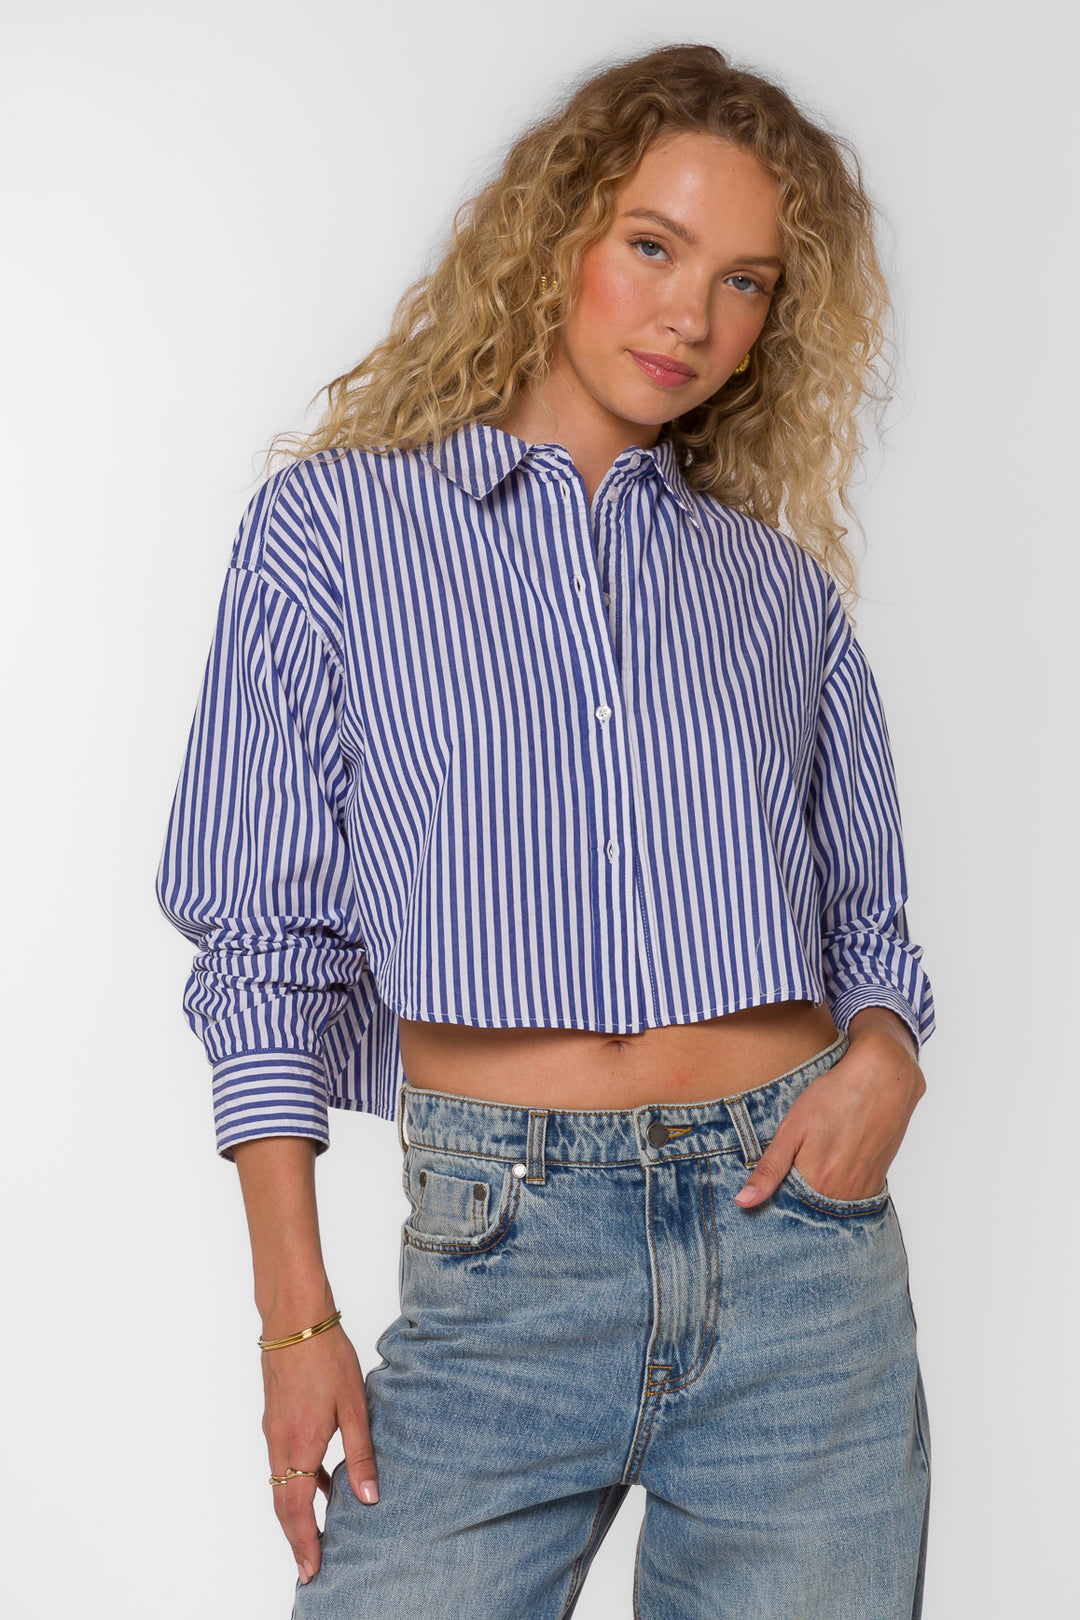 Trinity Iced Blue Stripe Shirt - Tops - Velvet Heart Clothing